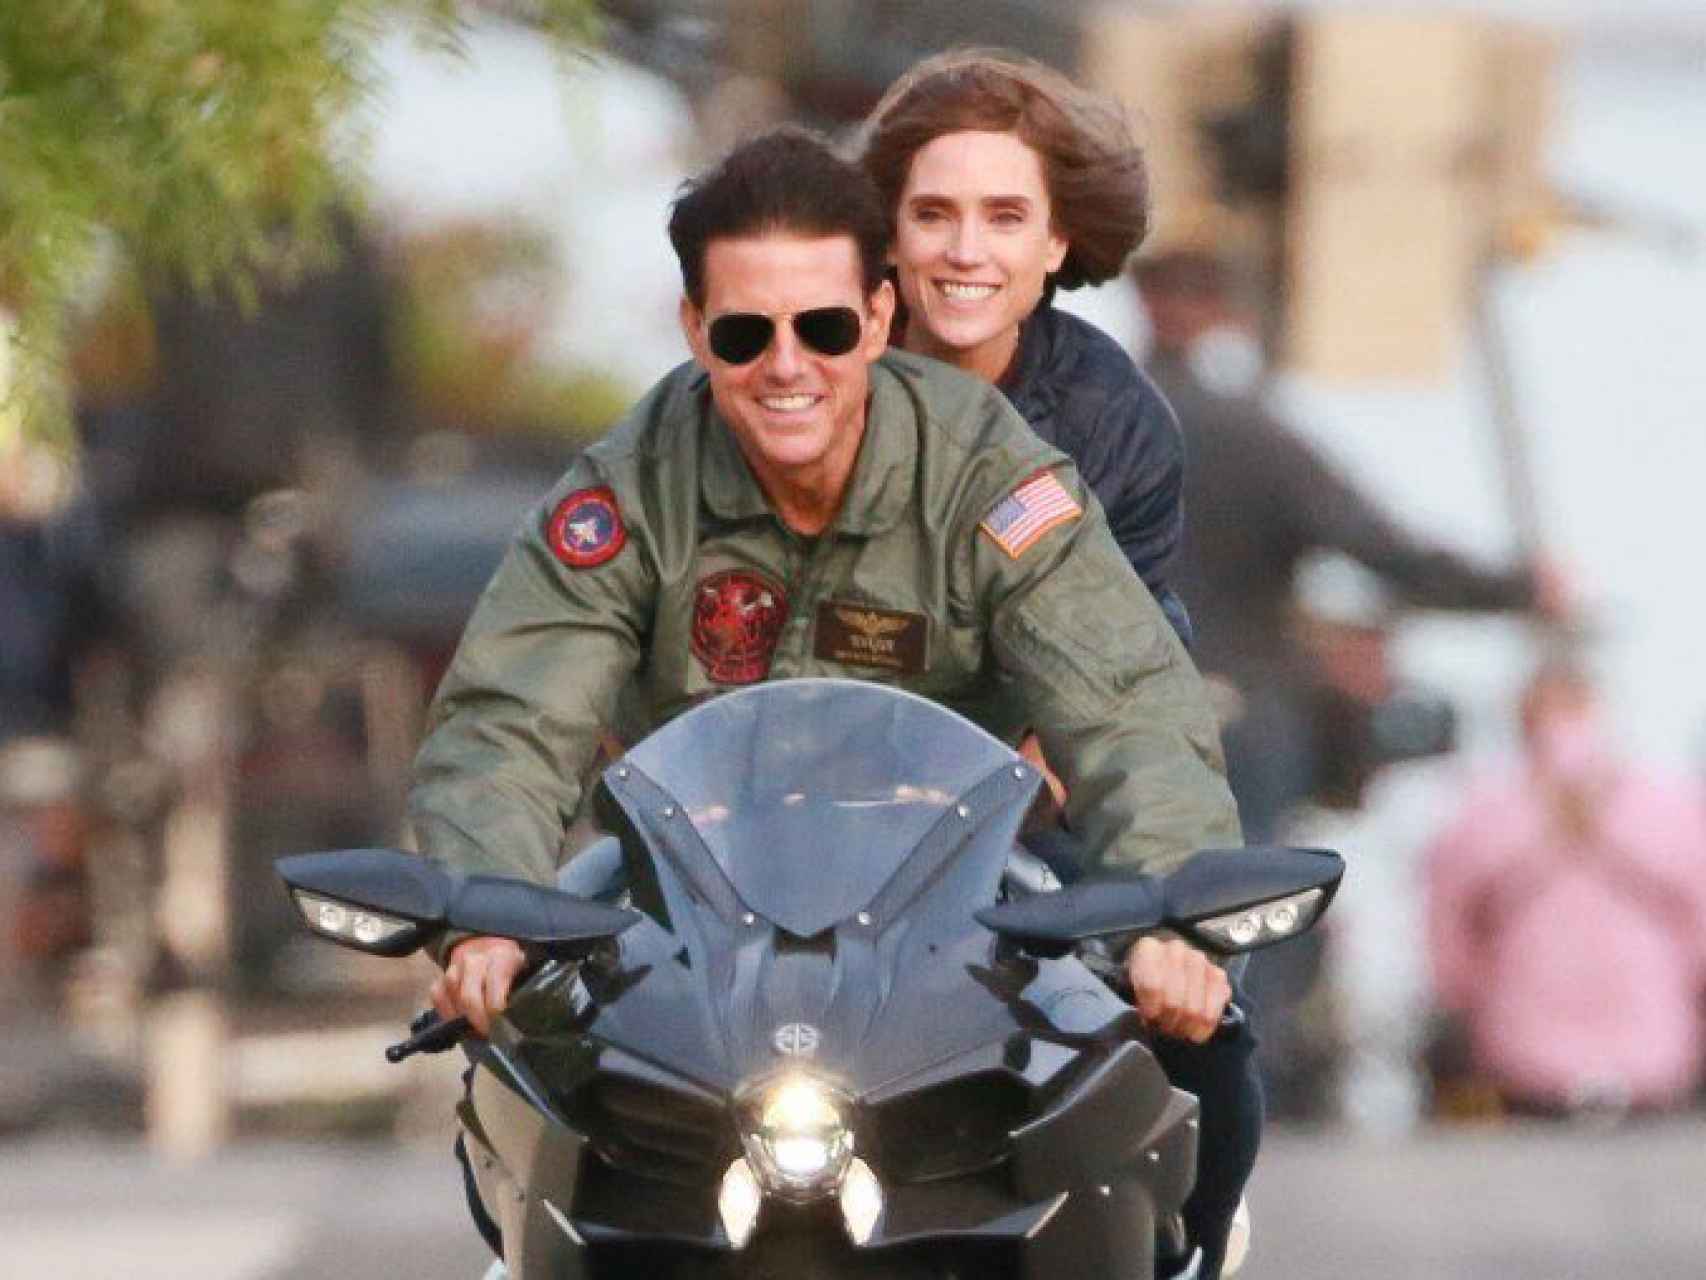 Kawasaki Ninja de Tom  Tom Cruise, un apasionado de las motos; en la vida real y en el cine